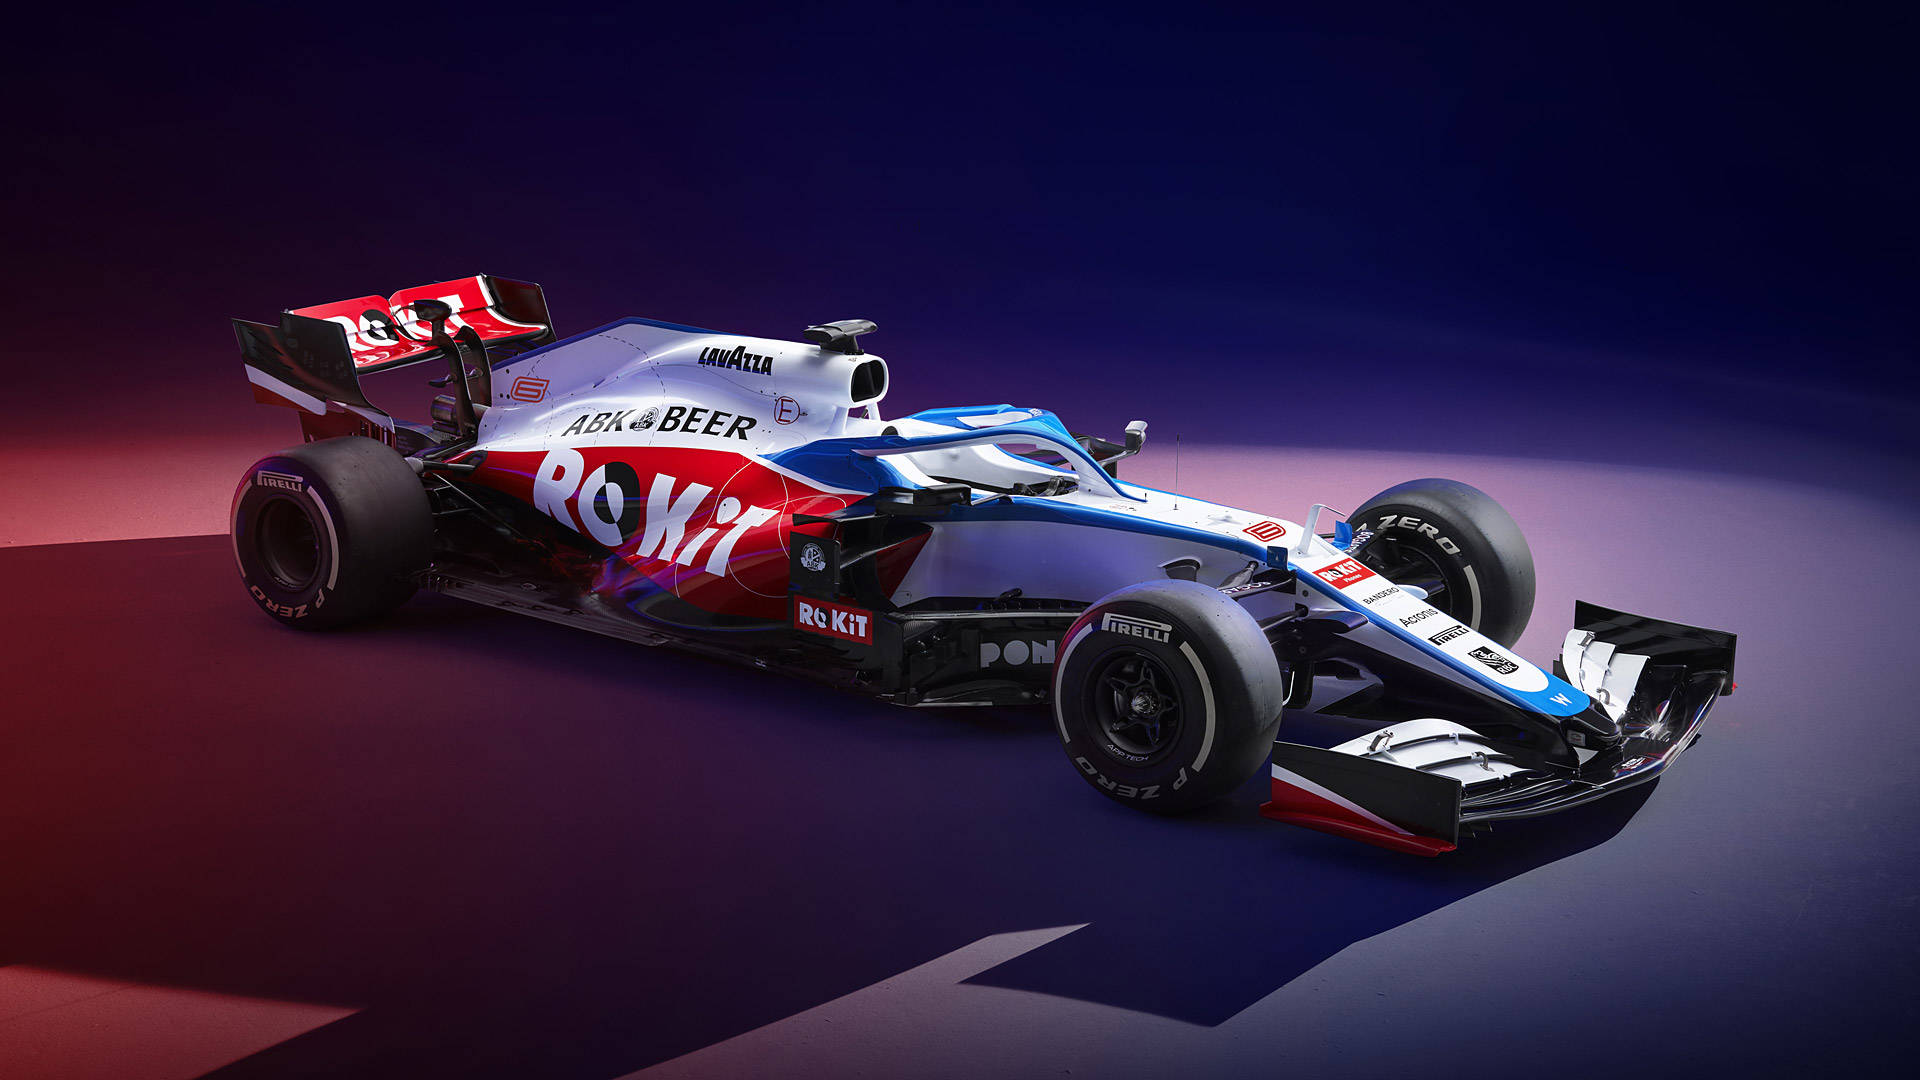 Bilen Williams F1 i et mørkt rum Wallpaper